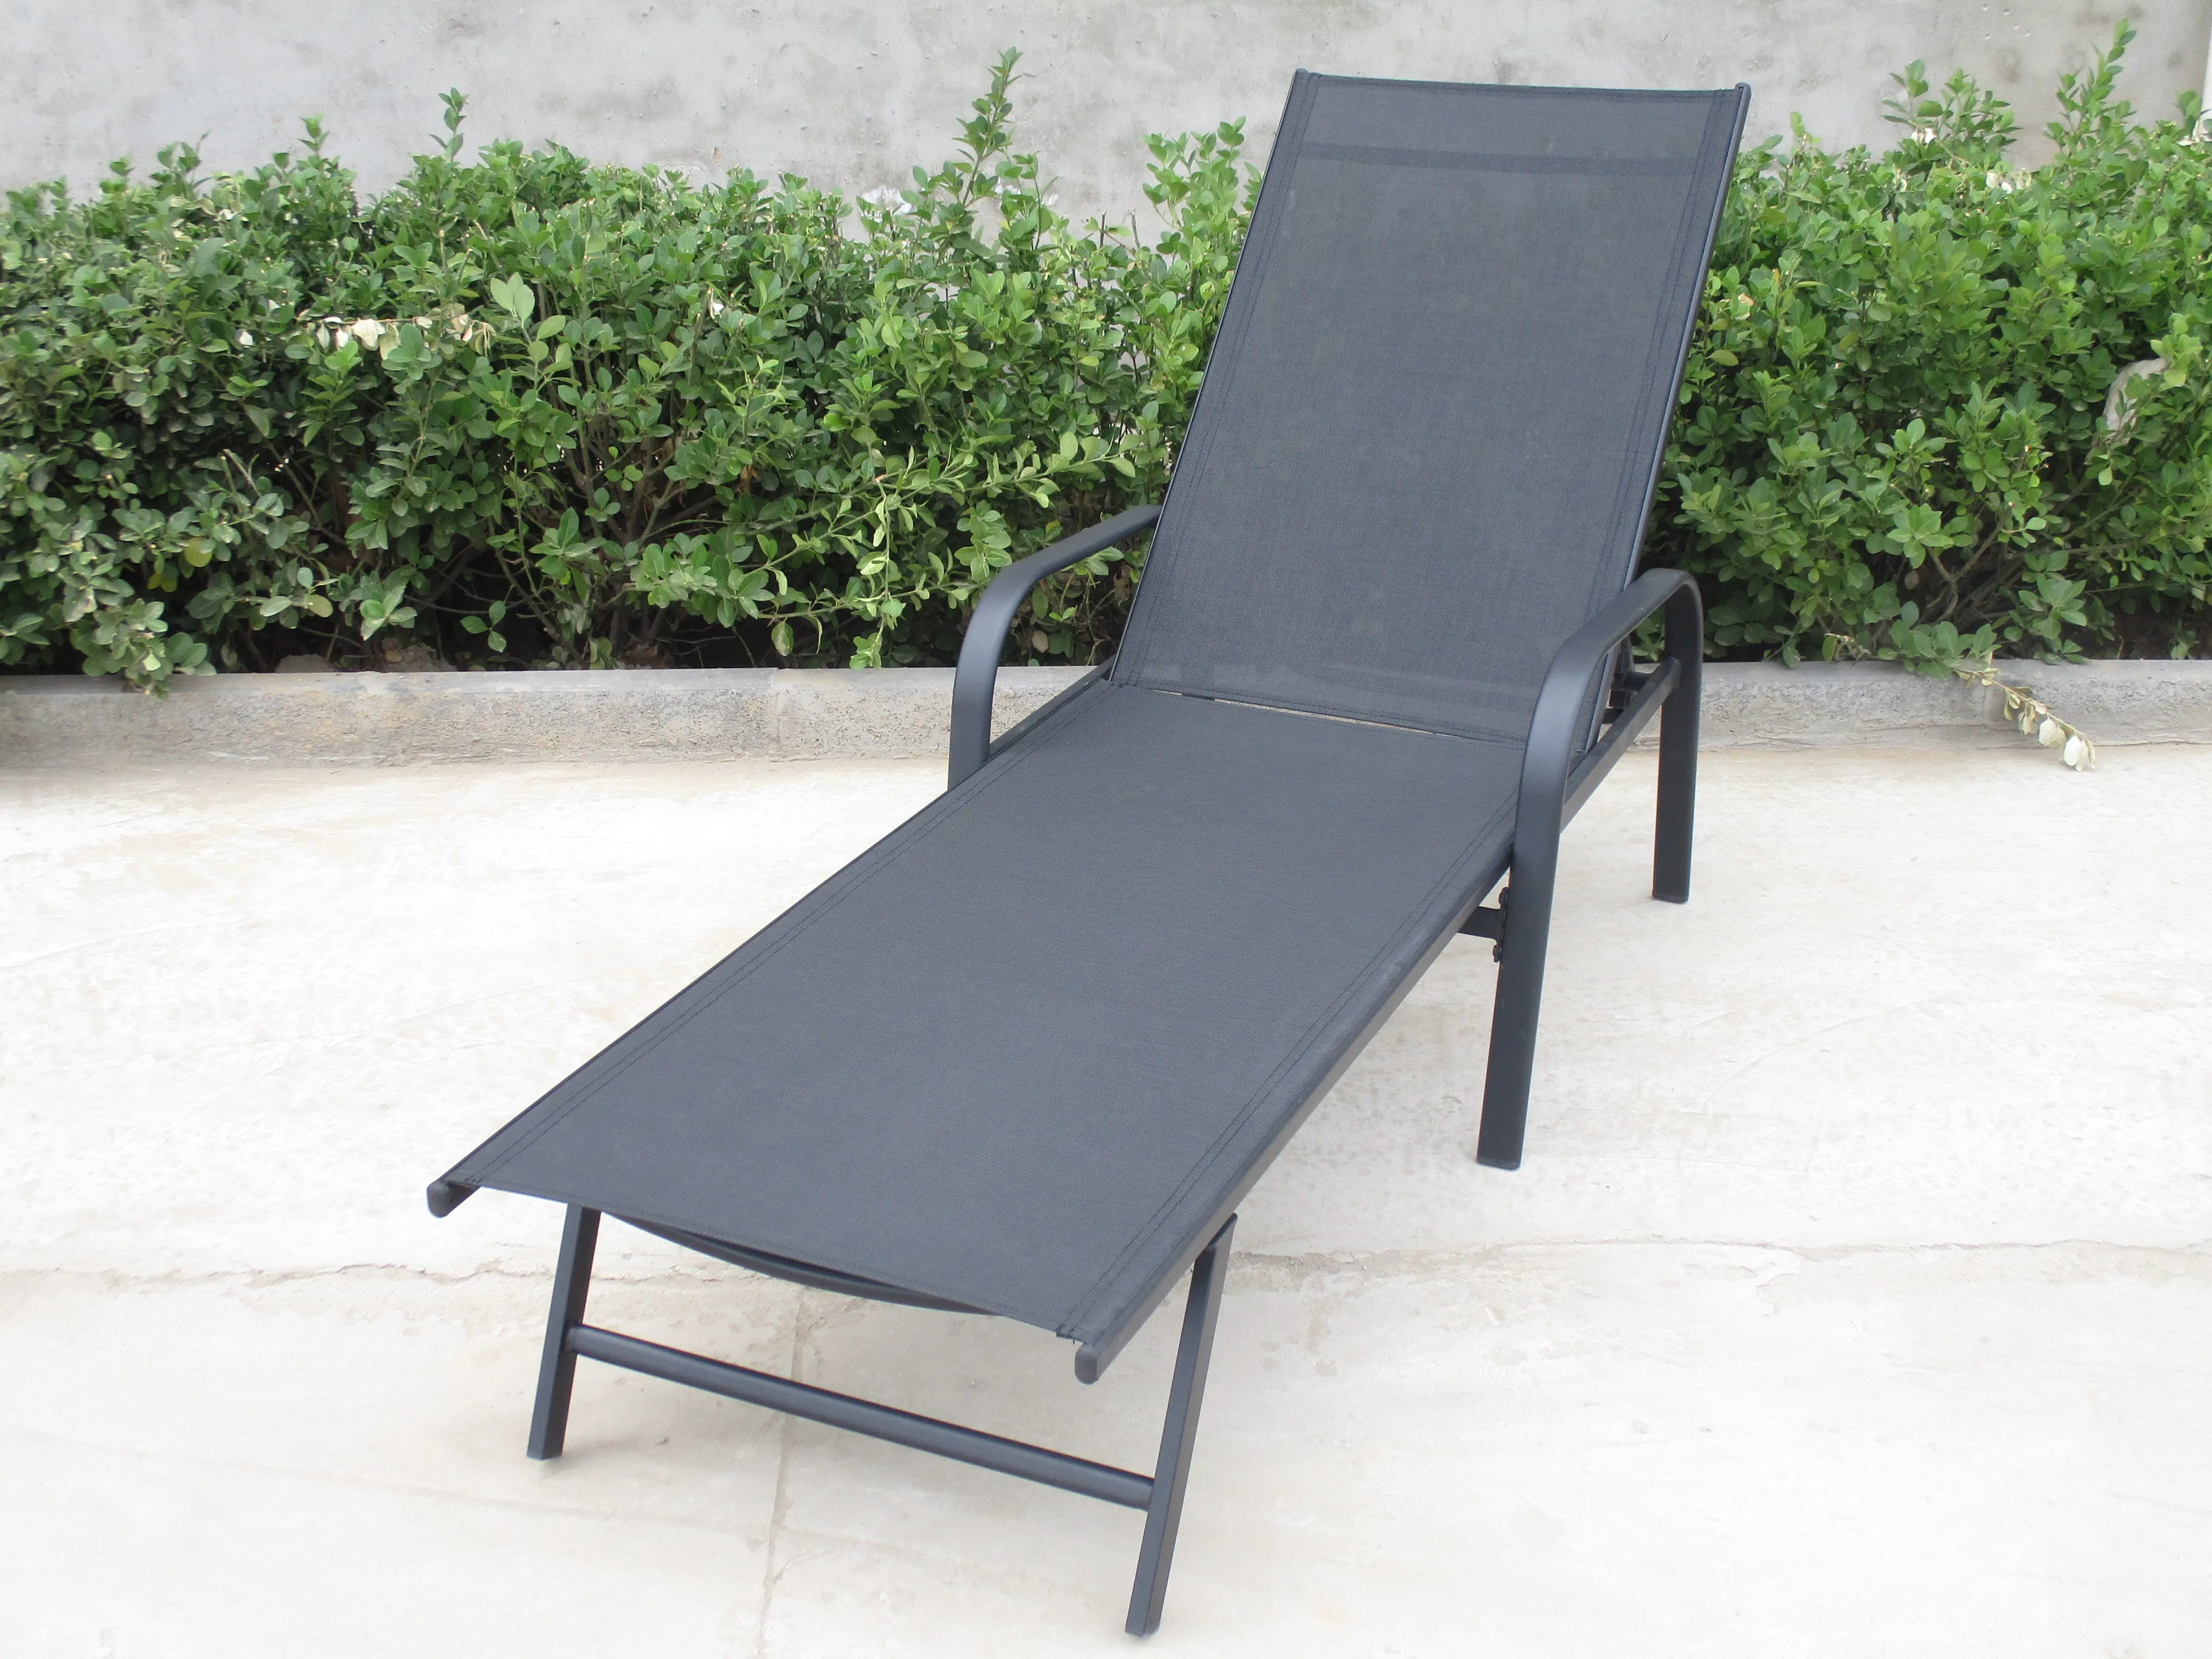 cheap hot sales adjustable  garden sun lounger outdoor furniture textoline beach sunbed chair